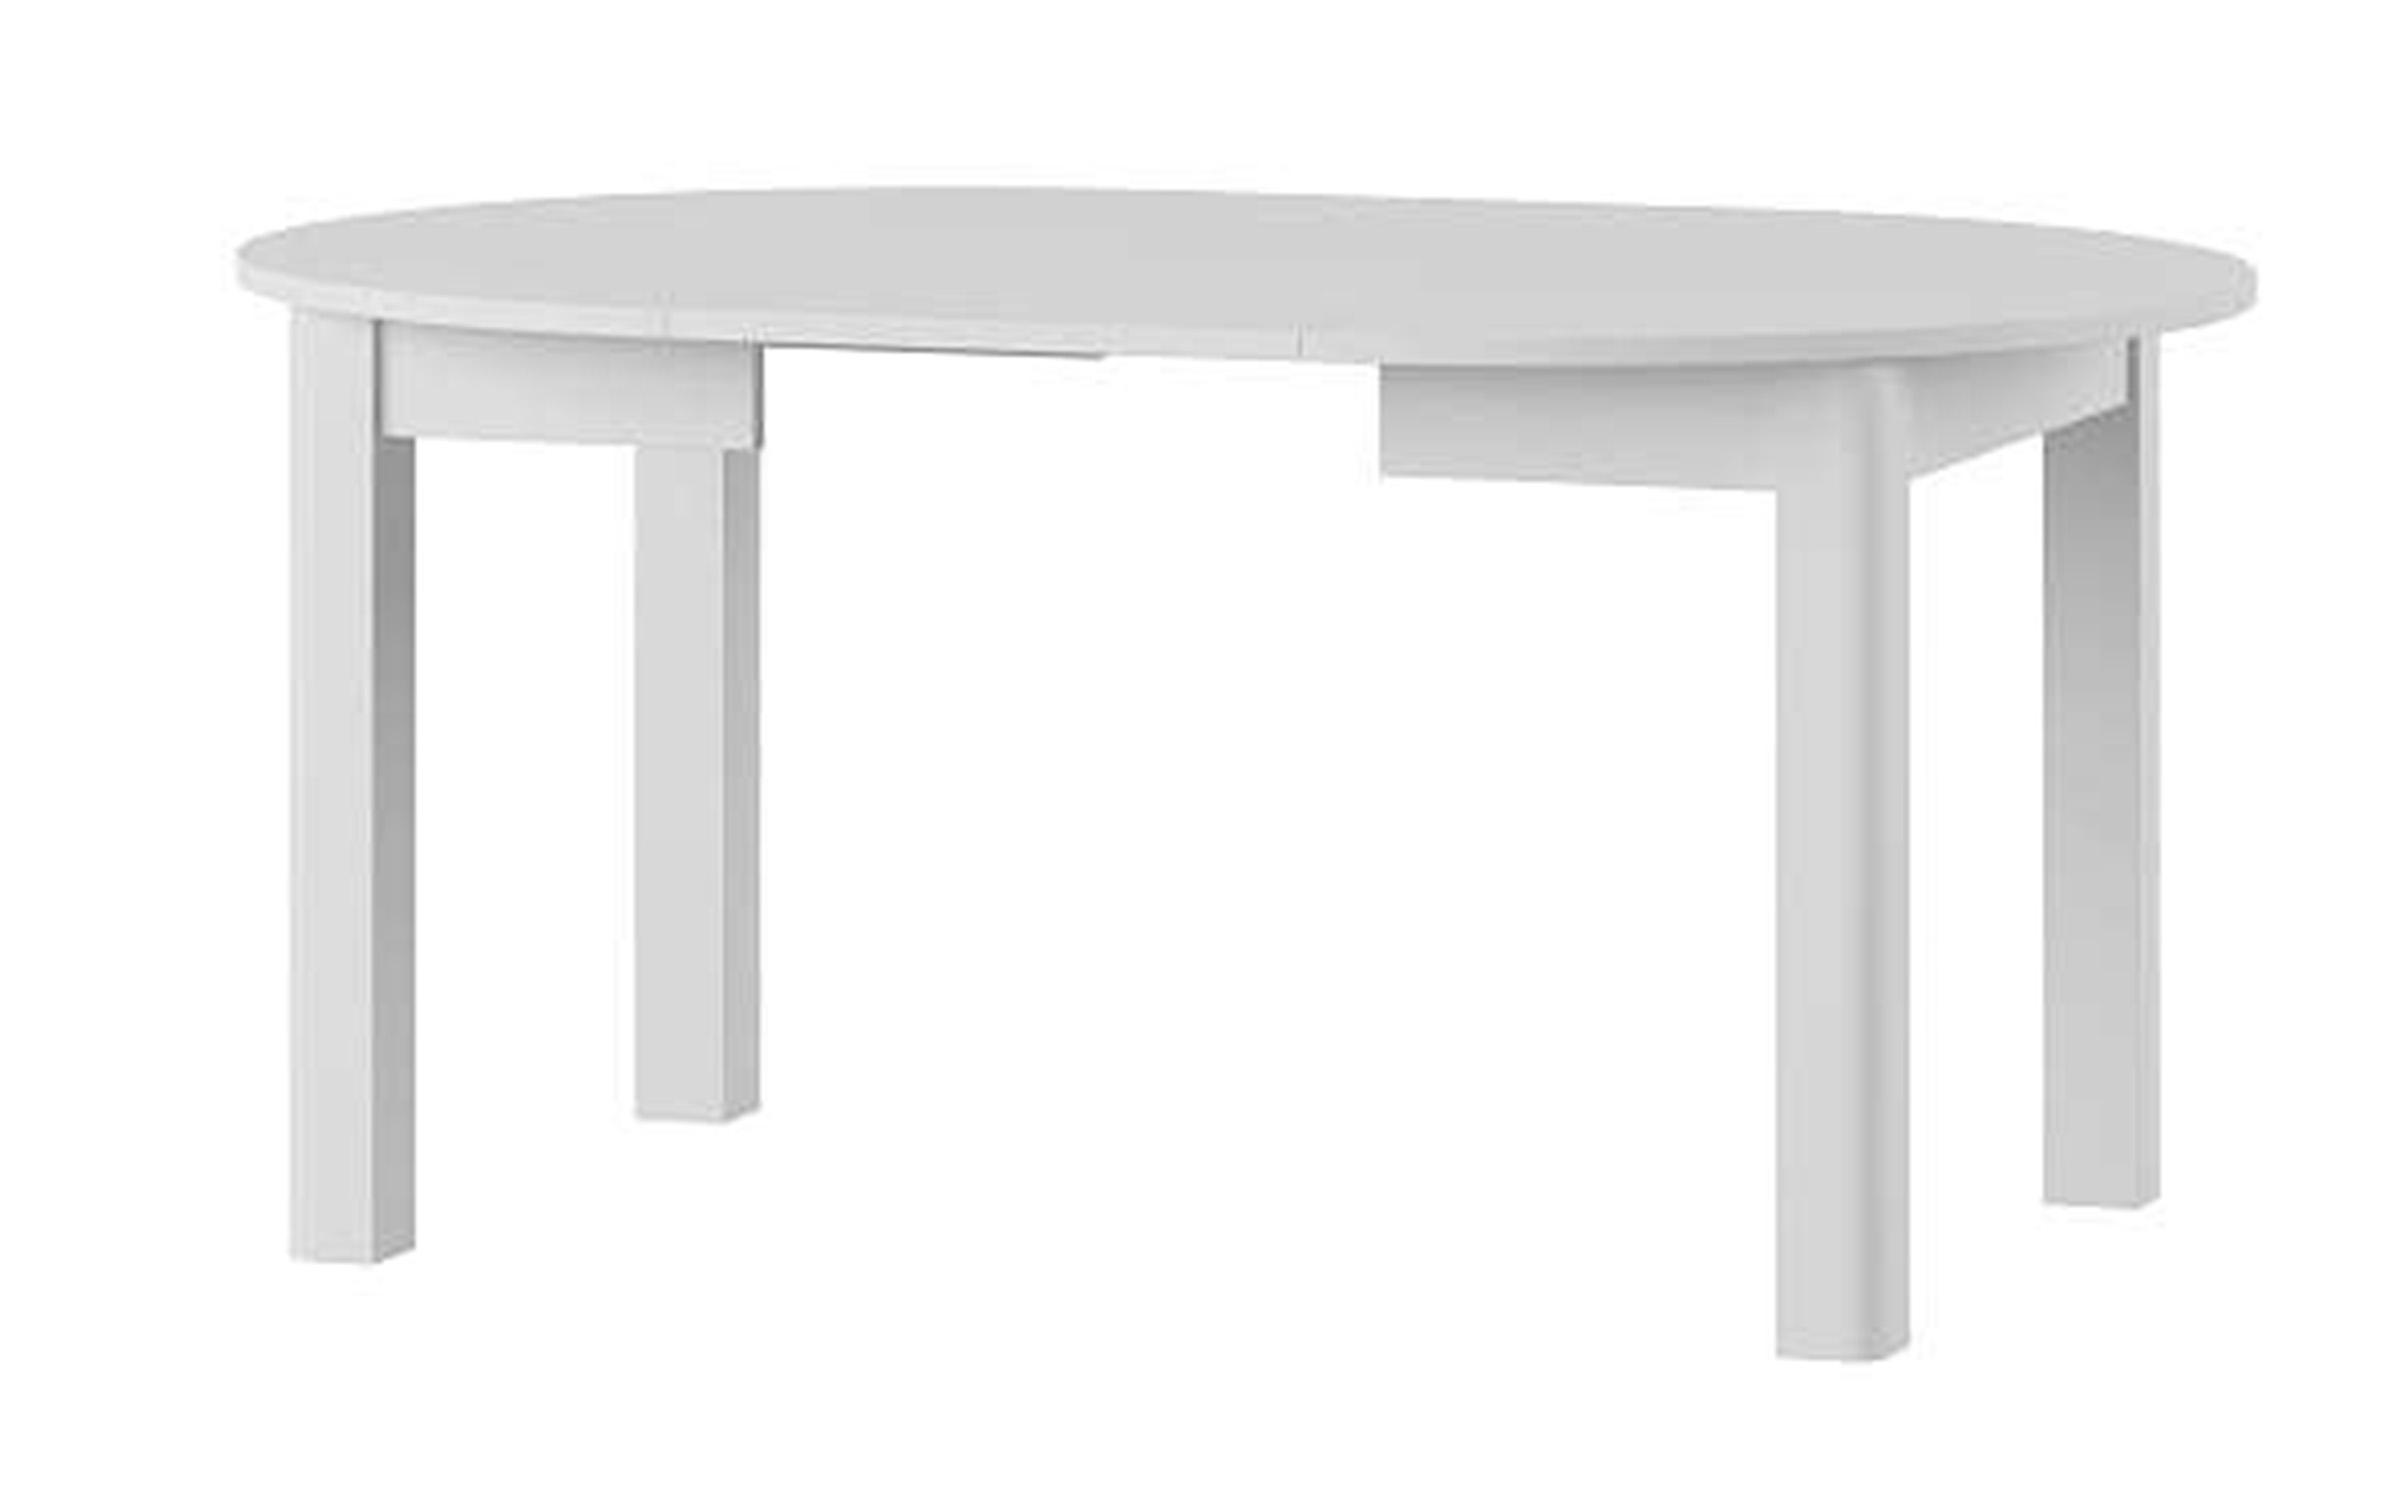 Tavolinë ngrënie  Uran, e bardhë mat  3